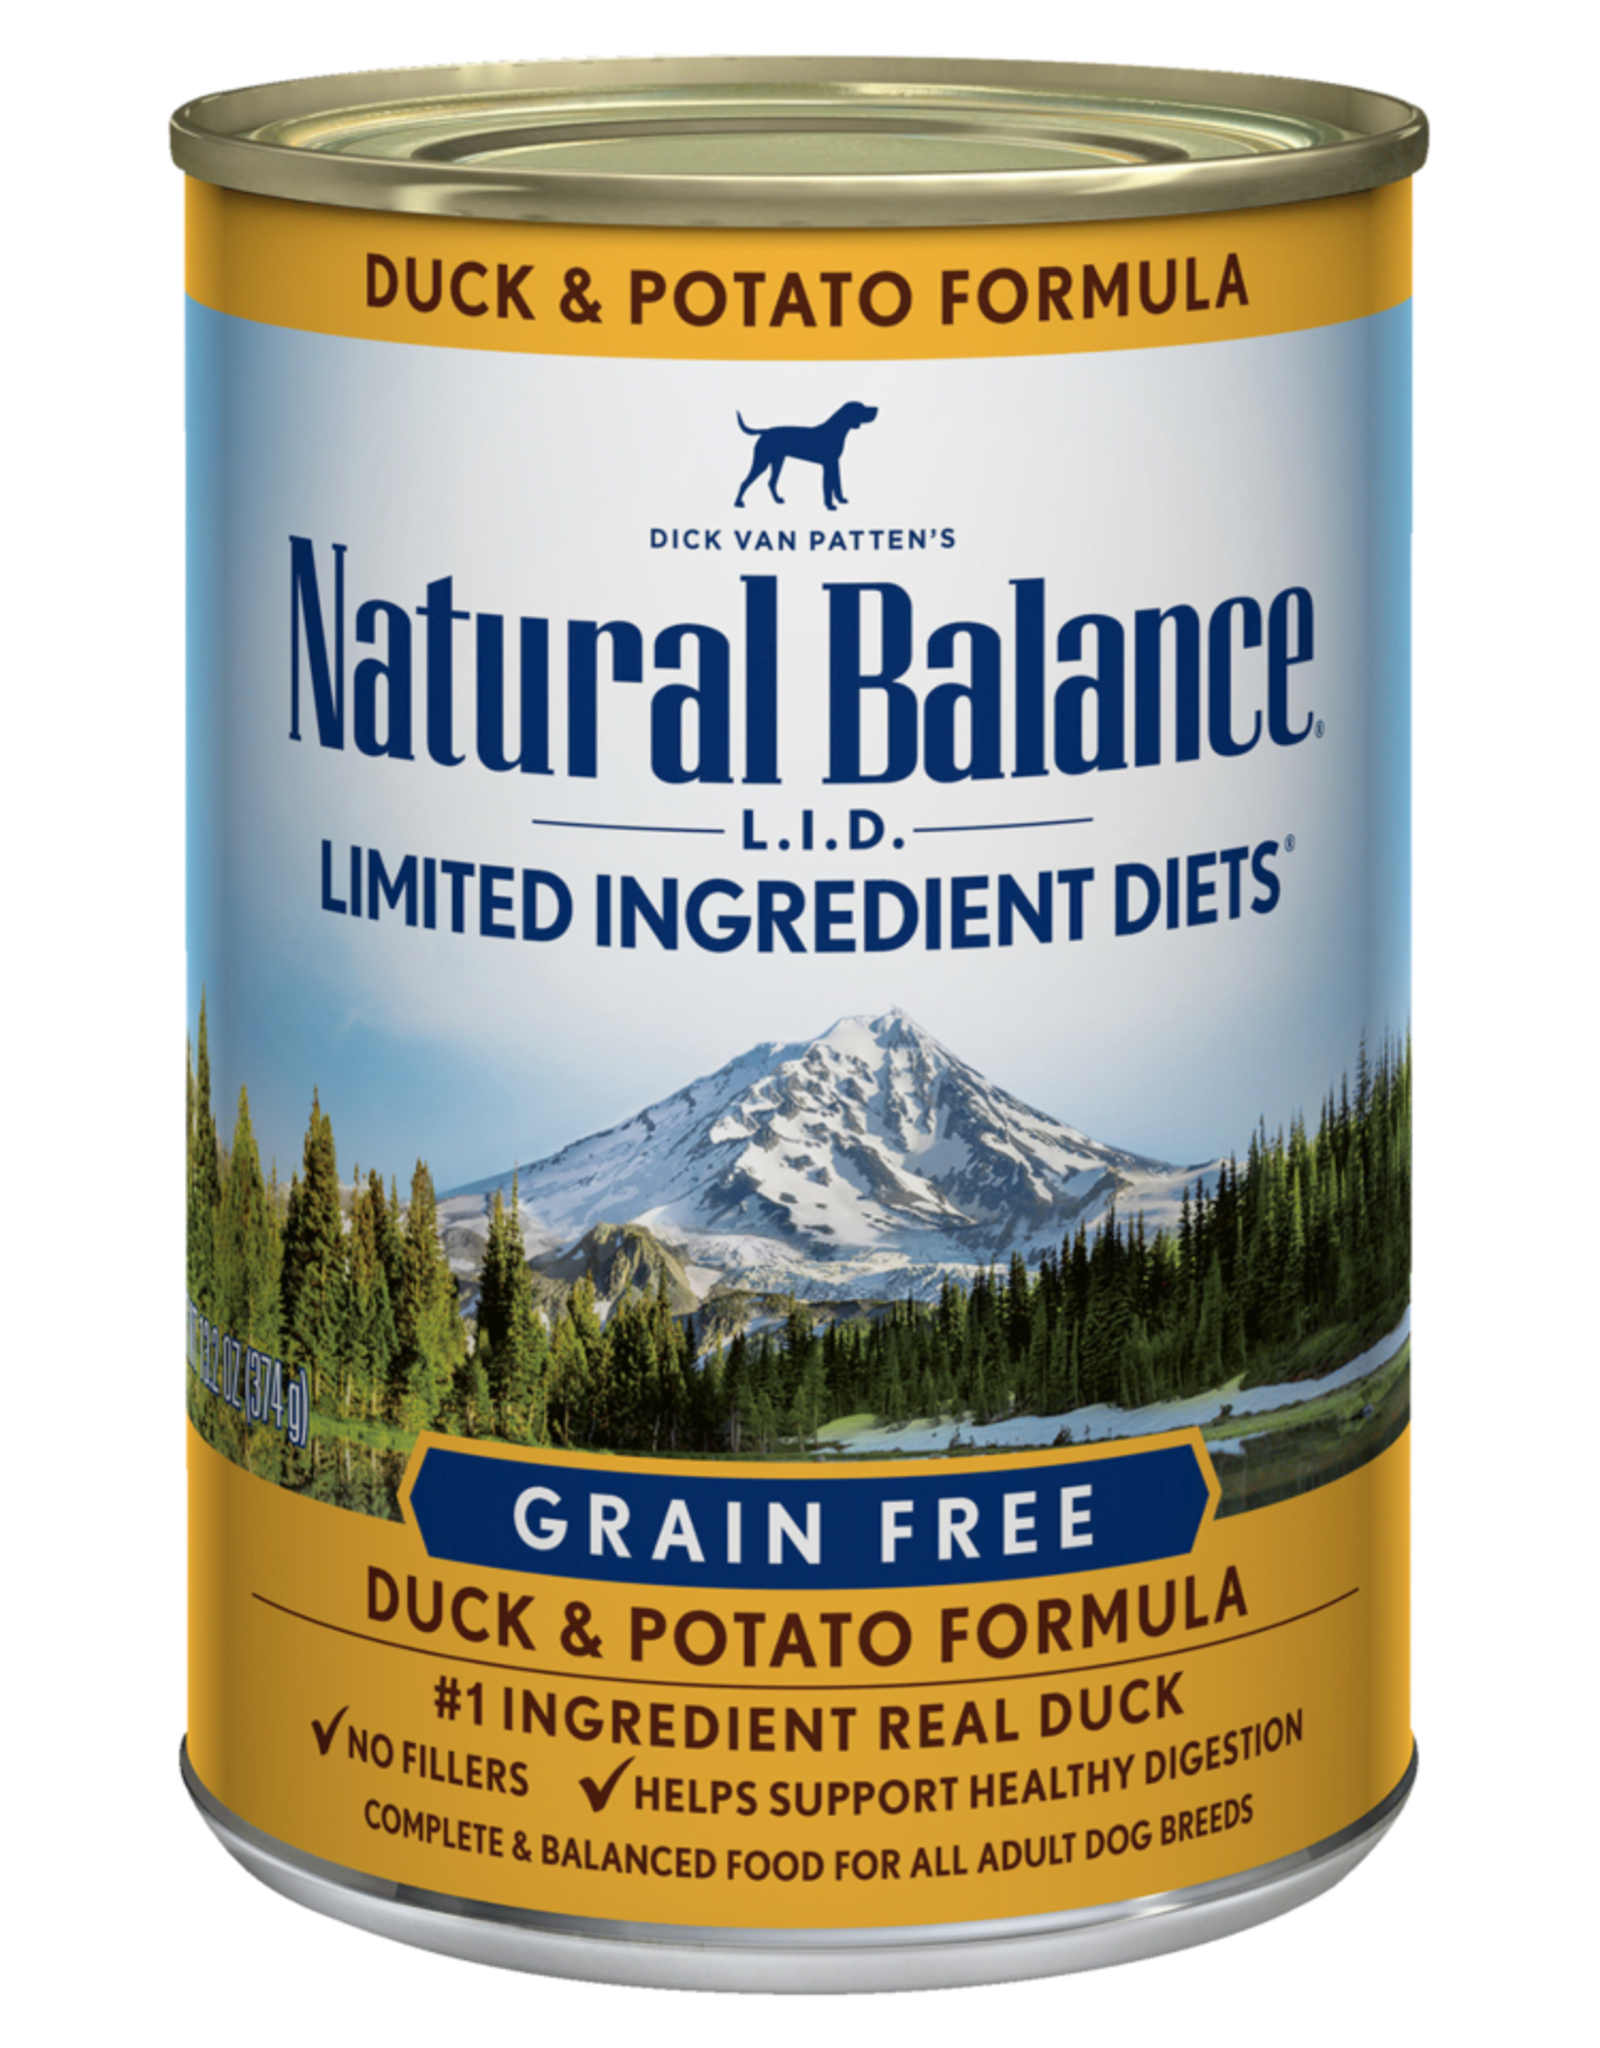 NATURAL BALANCE PET FOODS, INC NATURAL BALANCE DOG DUCK & POTATO CAN 13OZ CASE OF 12